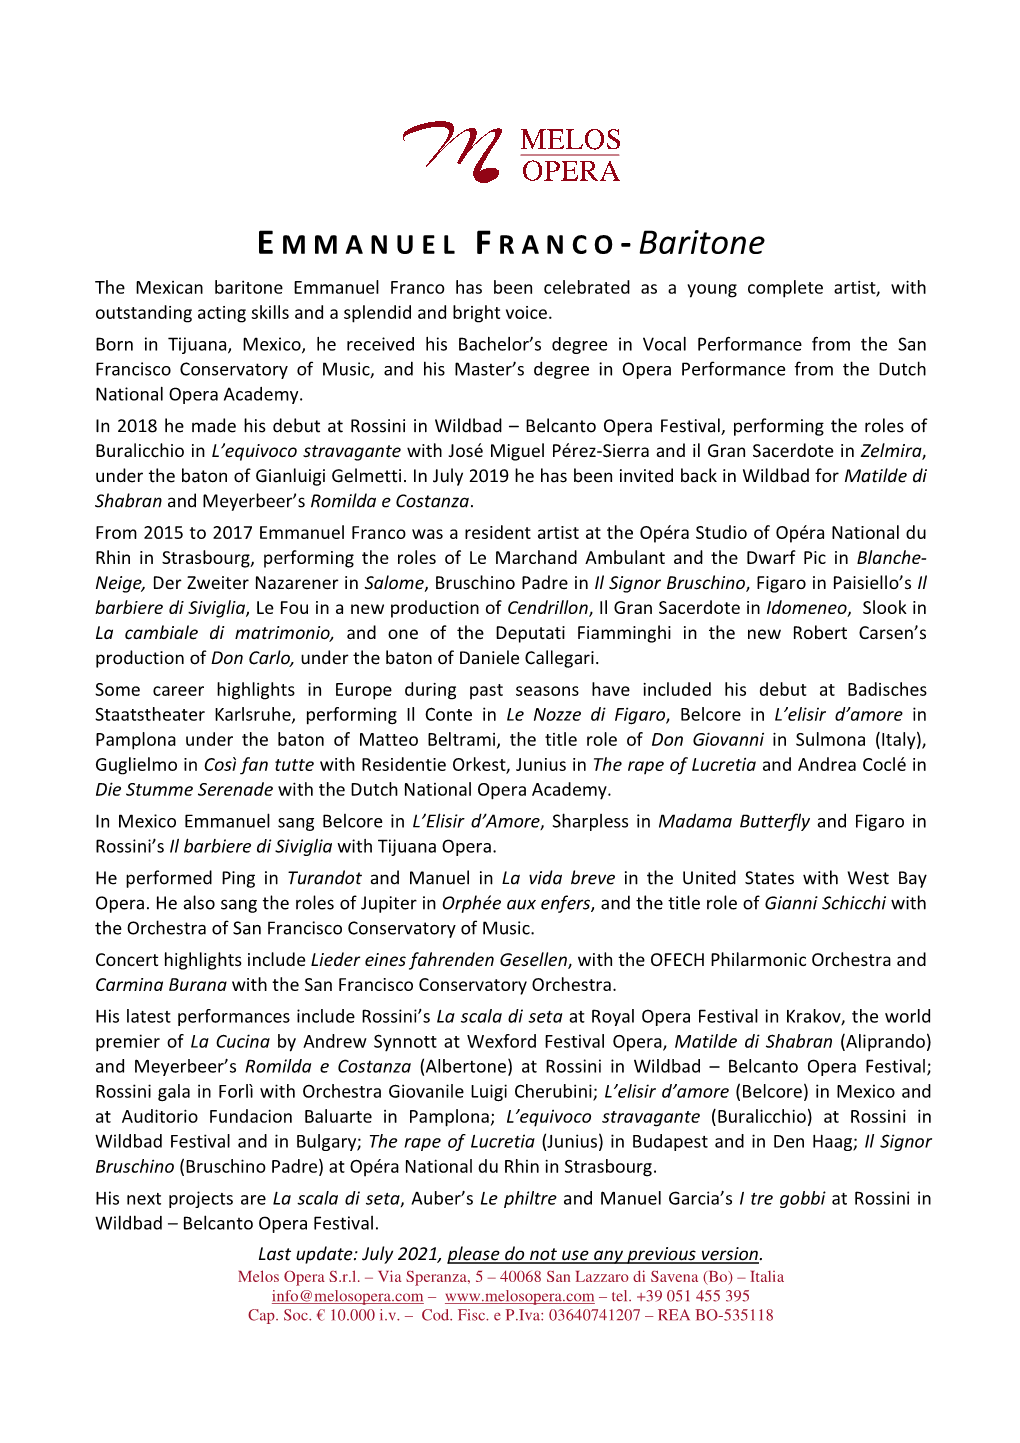 EMMANUEL FRANCO -Baritone